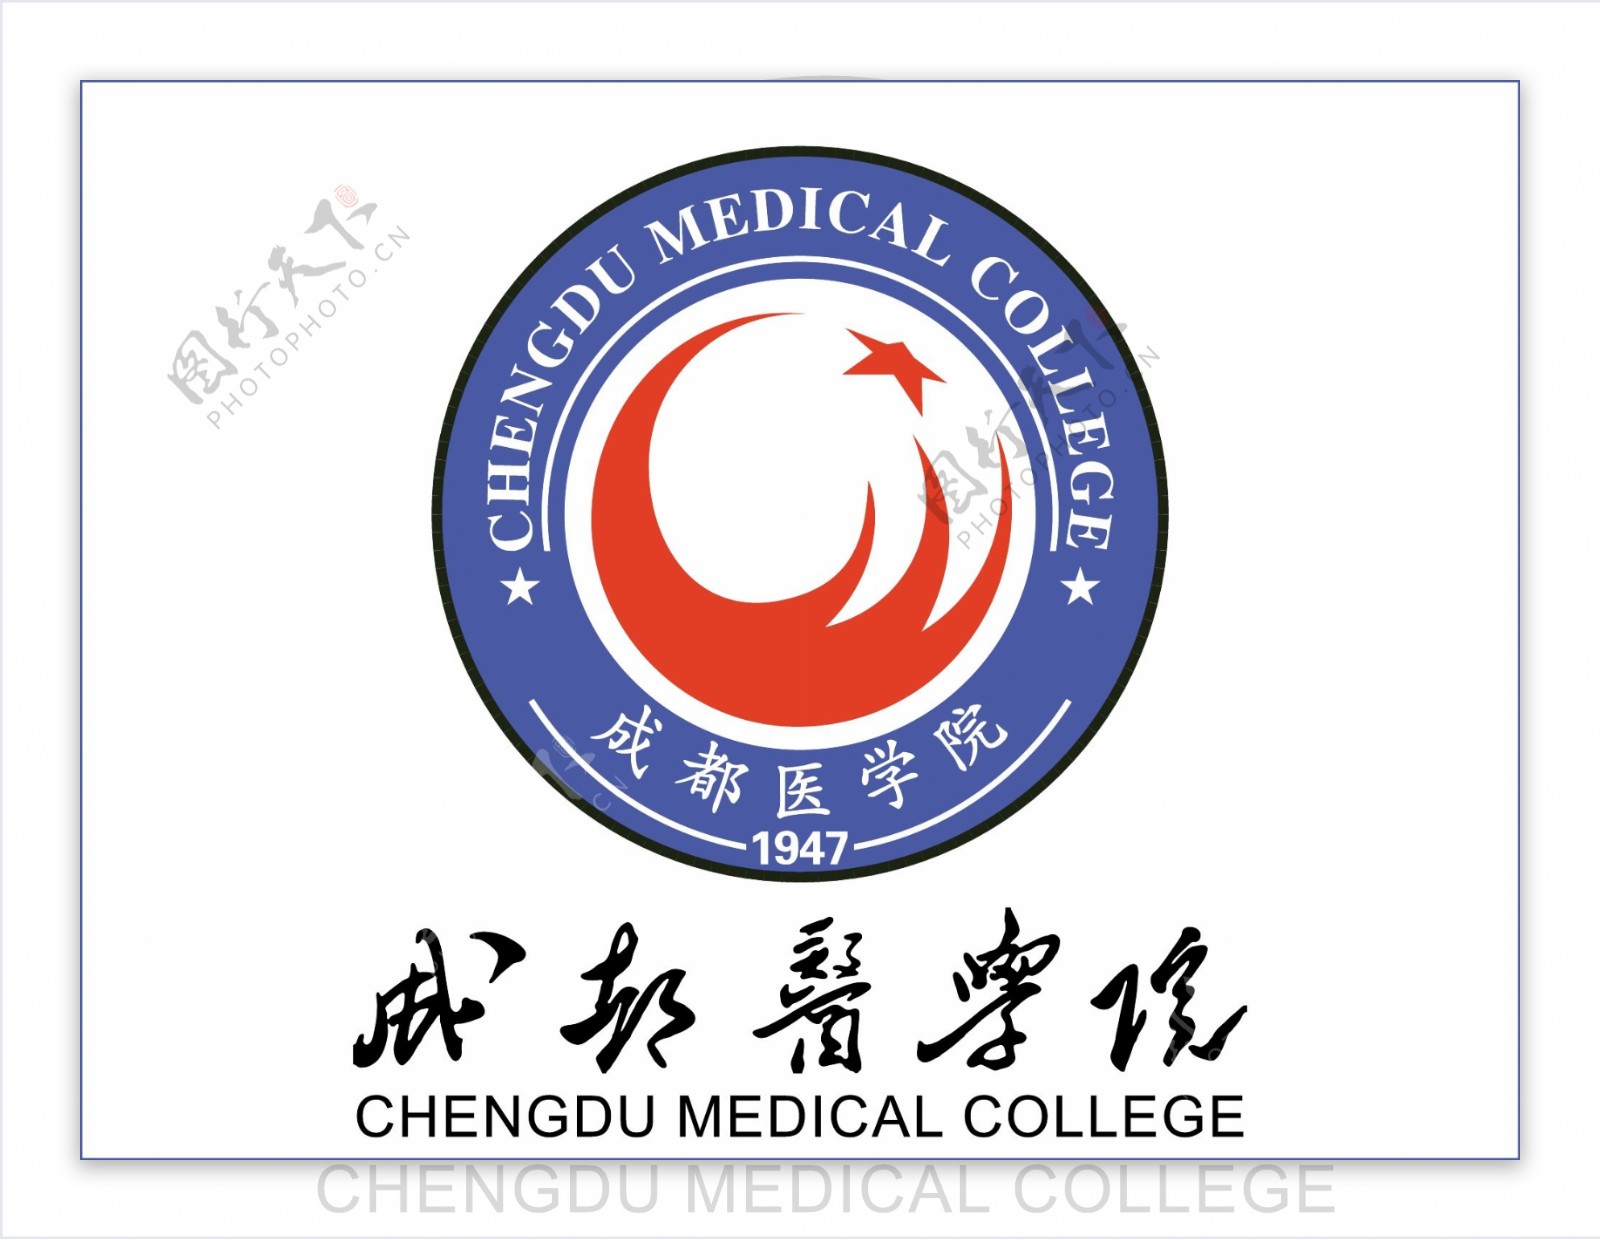 成都医学院logo